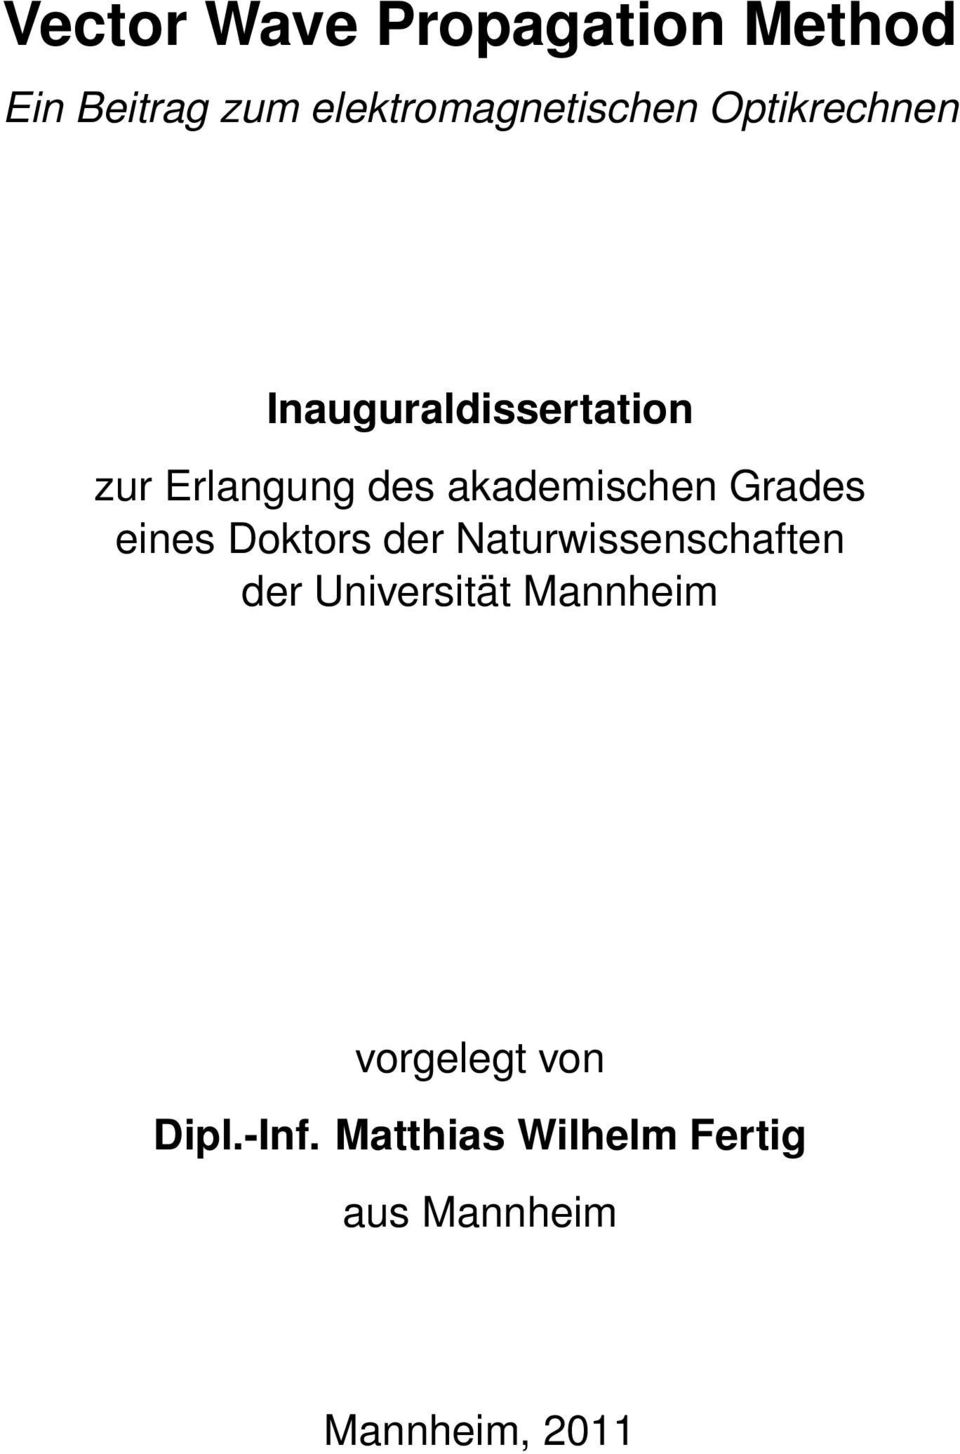 Grades eines Doktors der Naturwissenschaften der Universität Mannheim